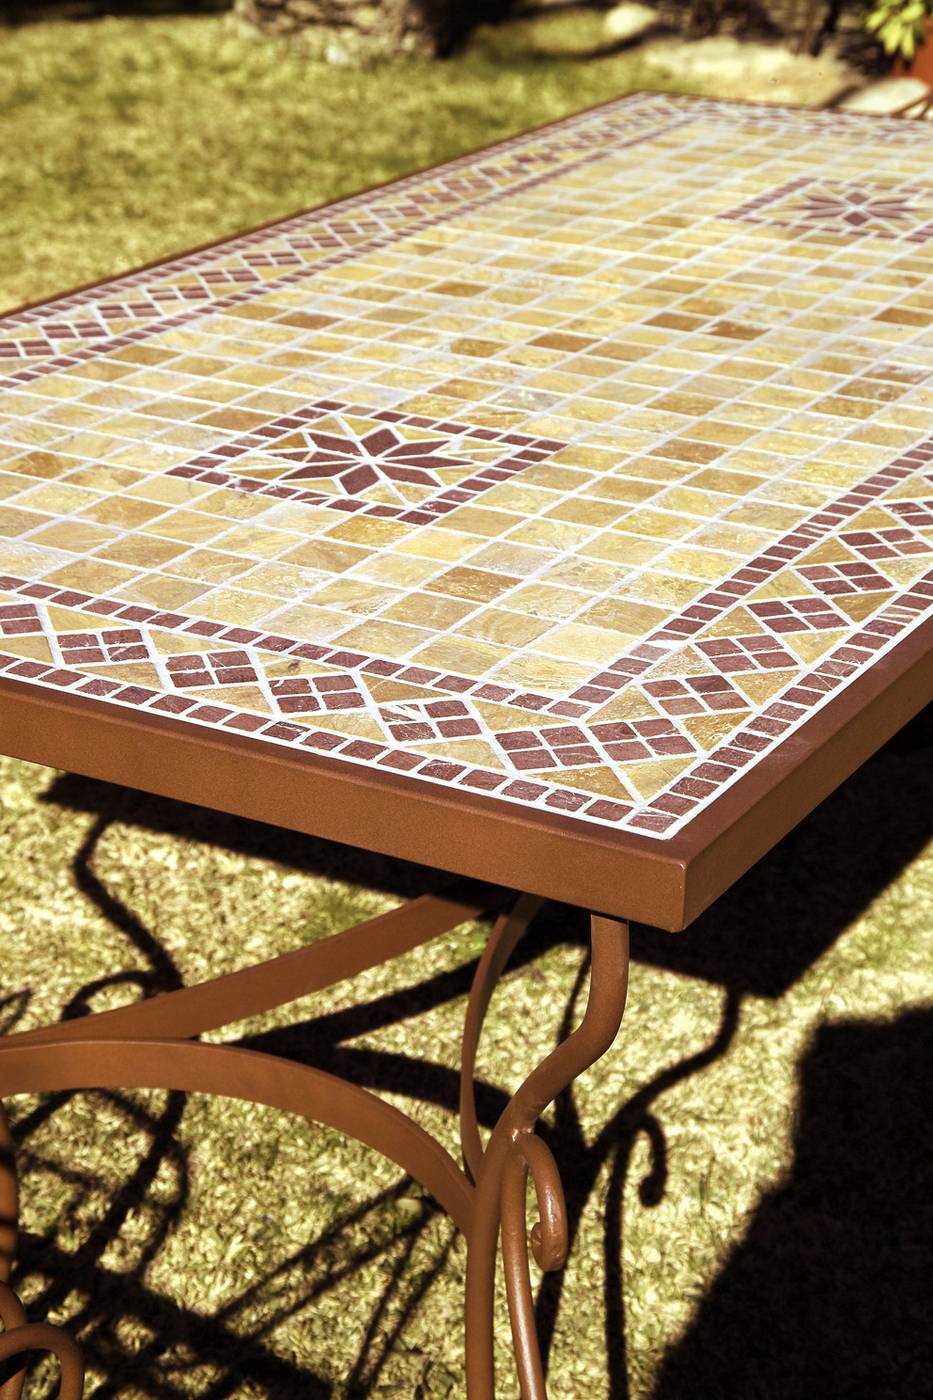 Conjunto forja Marbella - Conjunto de forja con mesa de mosaico, cerámica, werzalit o cristal y 4 sillones